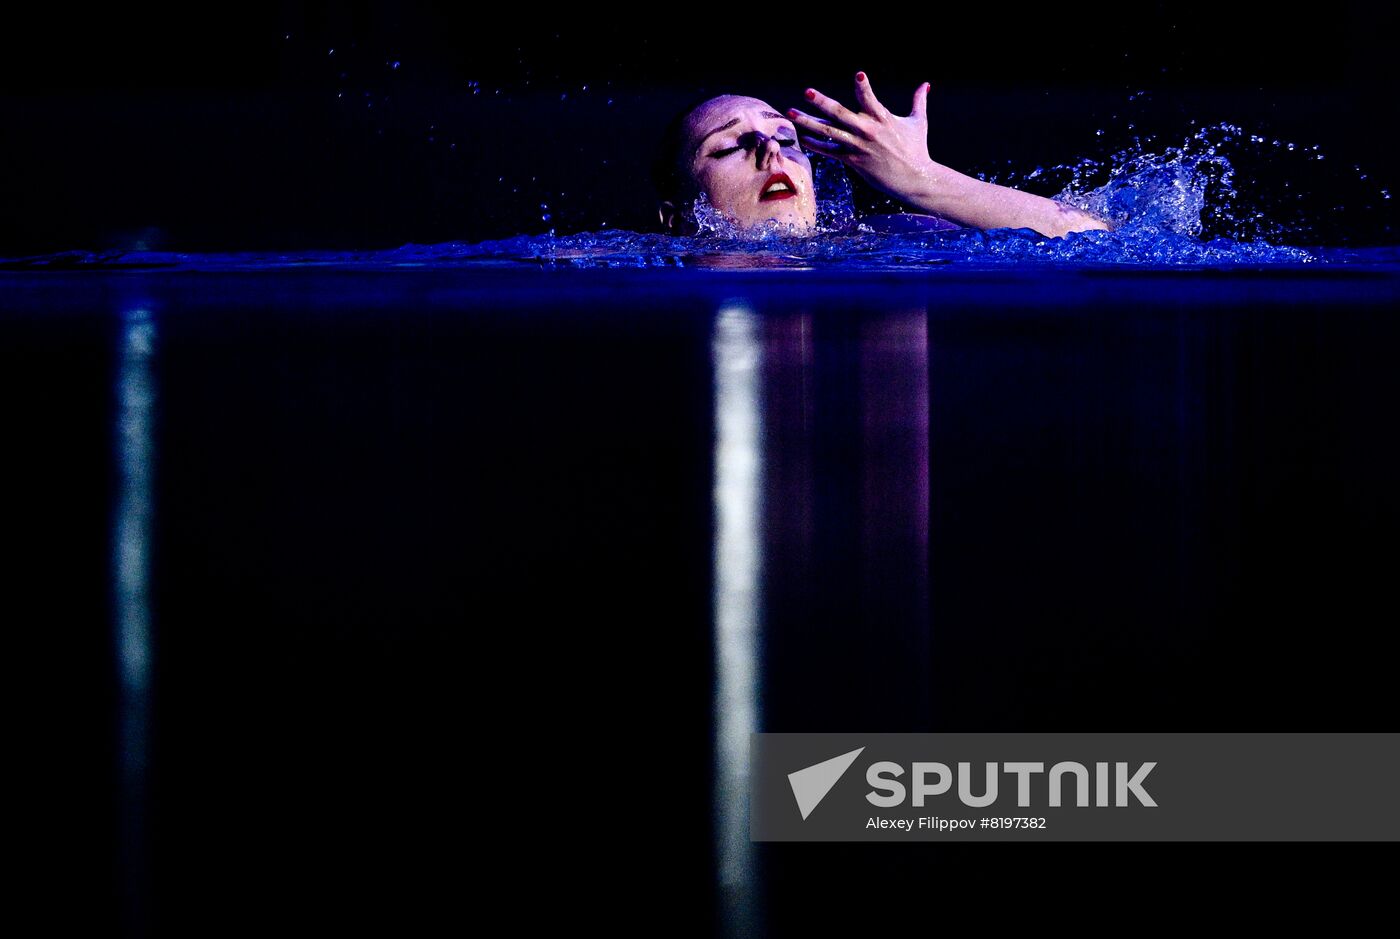 Russia Artistic Swimming Festival